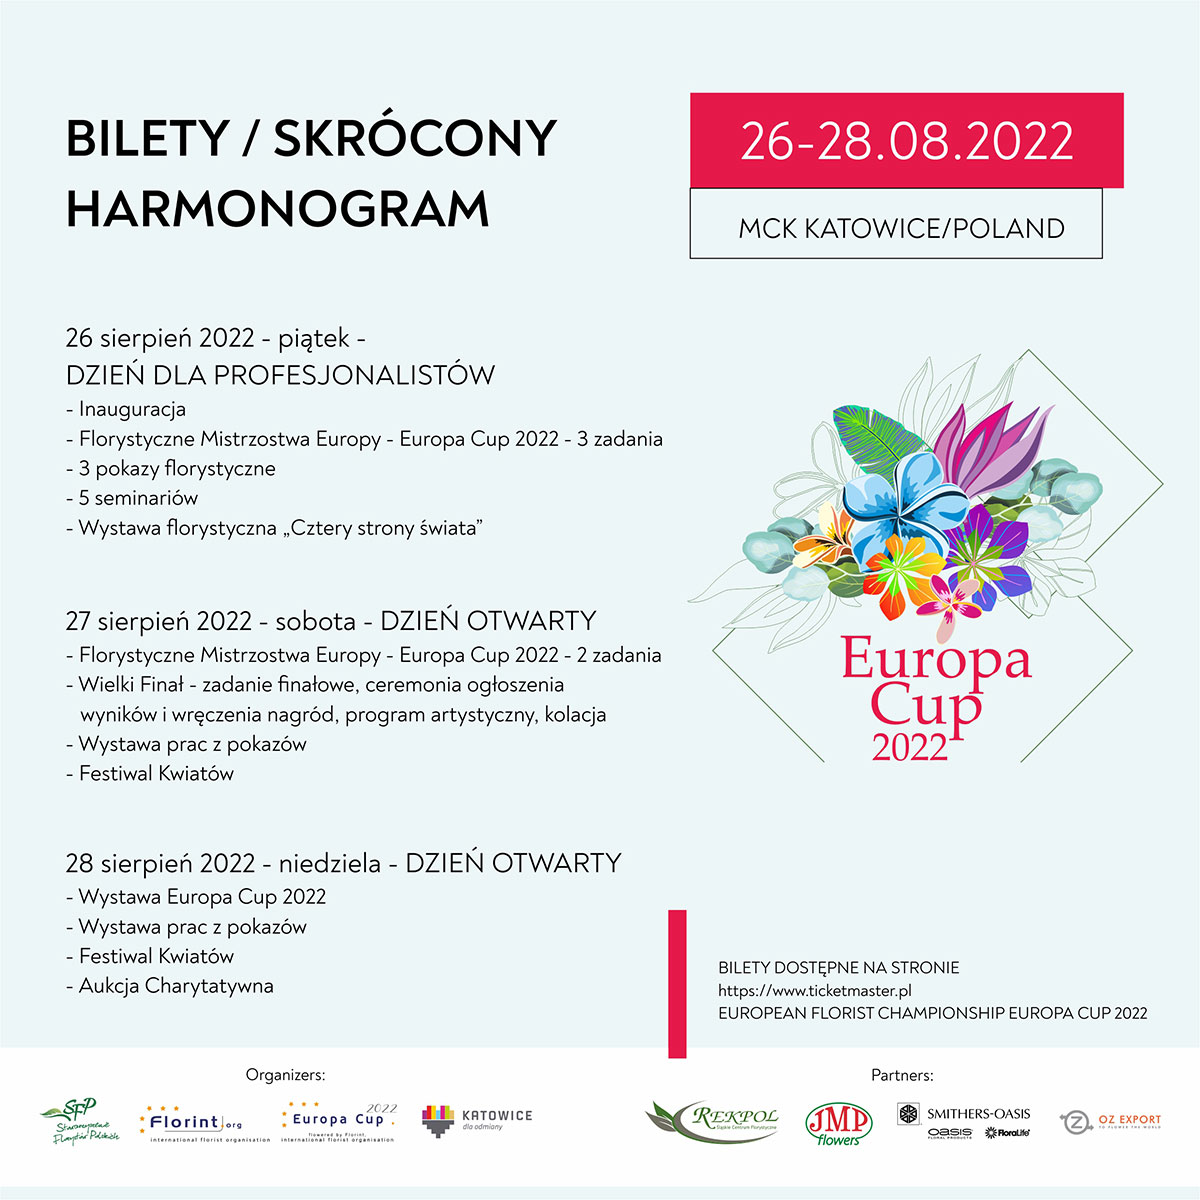 Europa Cup 2022 Mistrzostwa Florystyczne -program